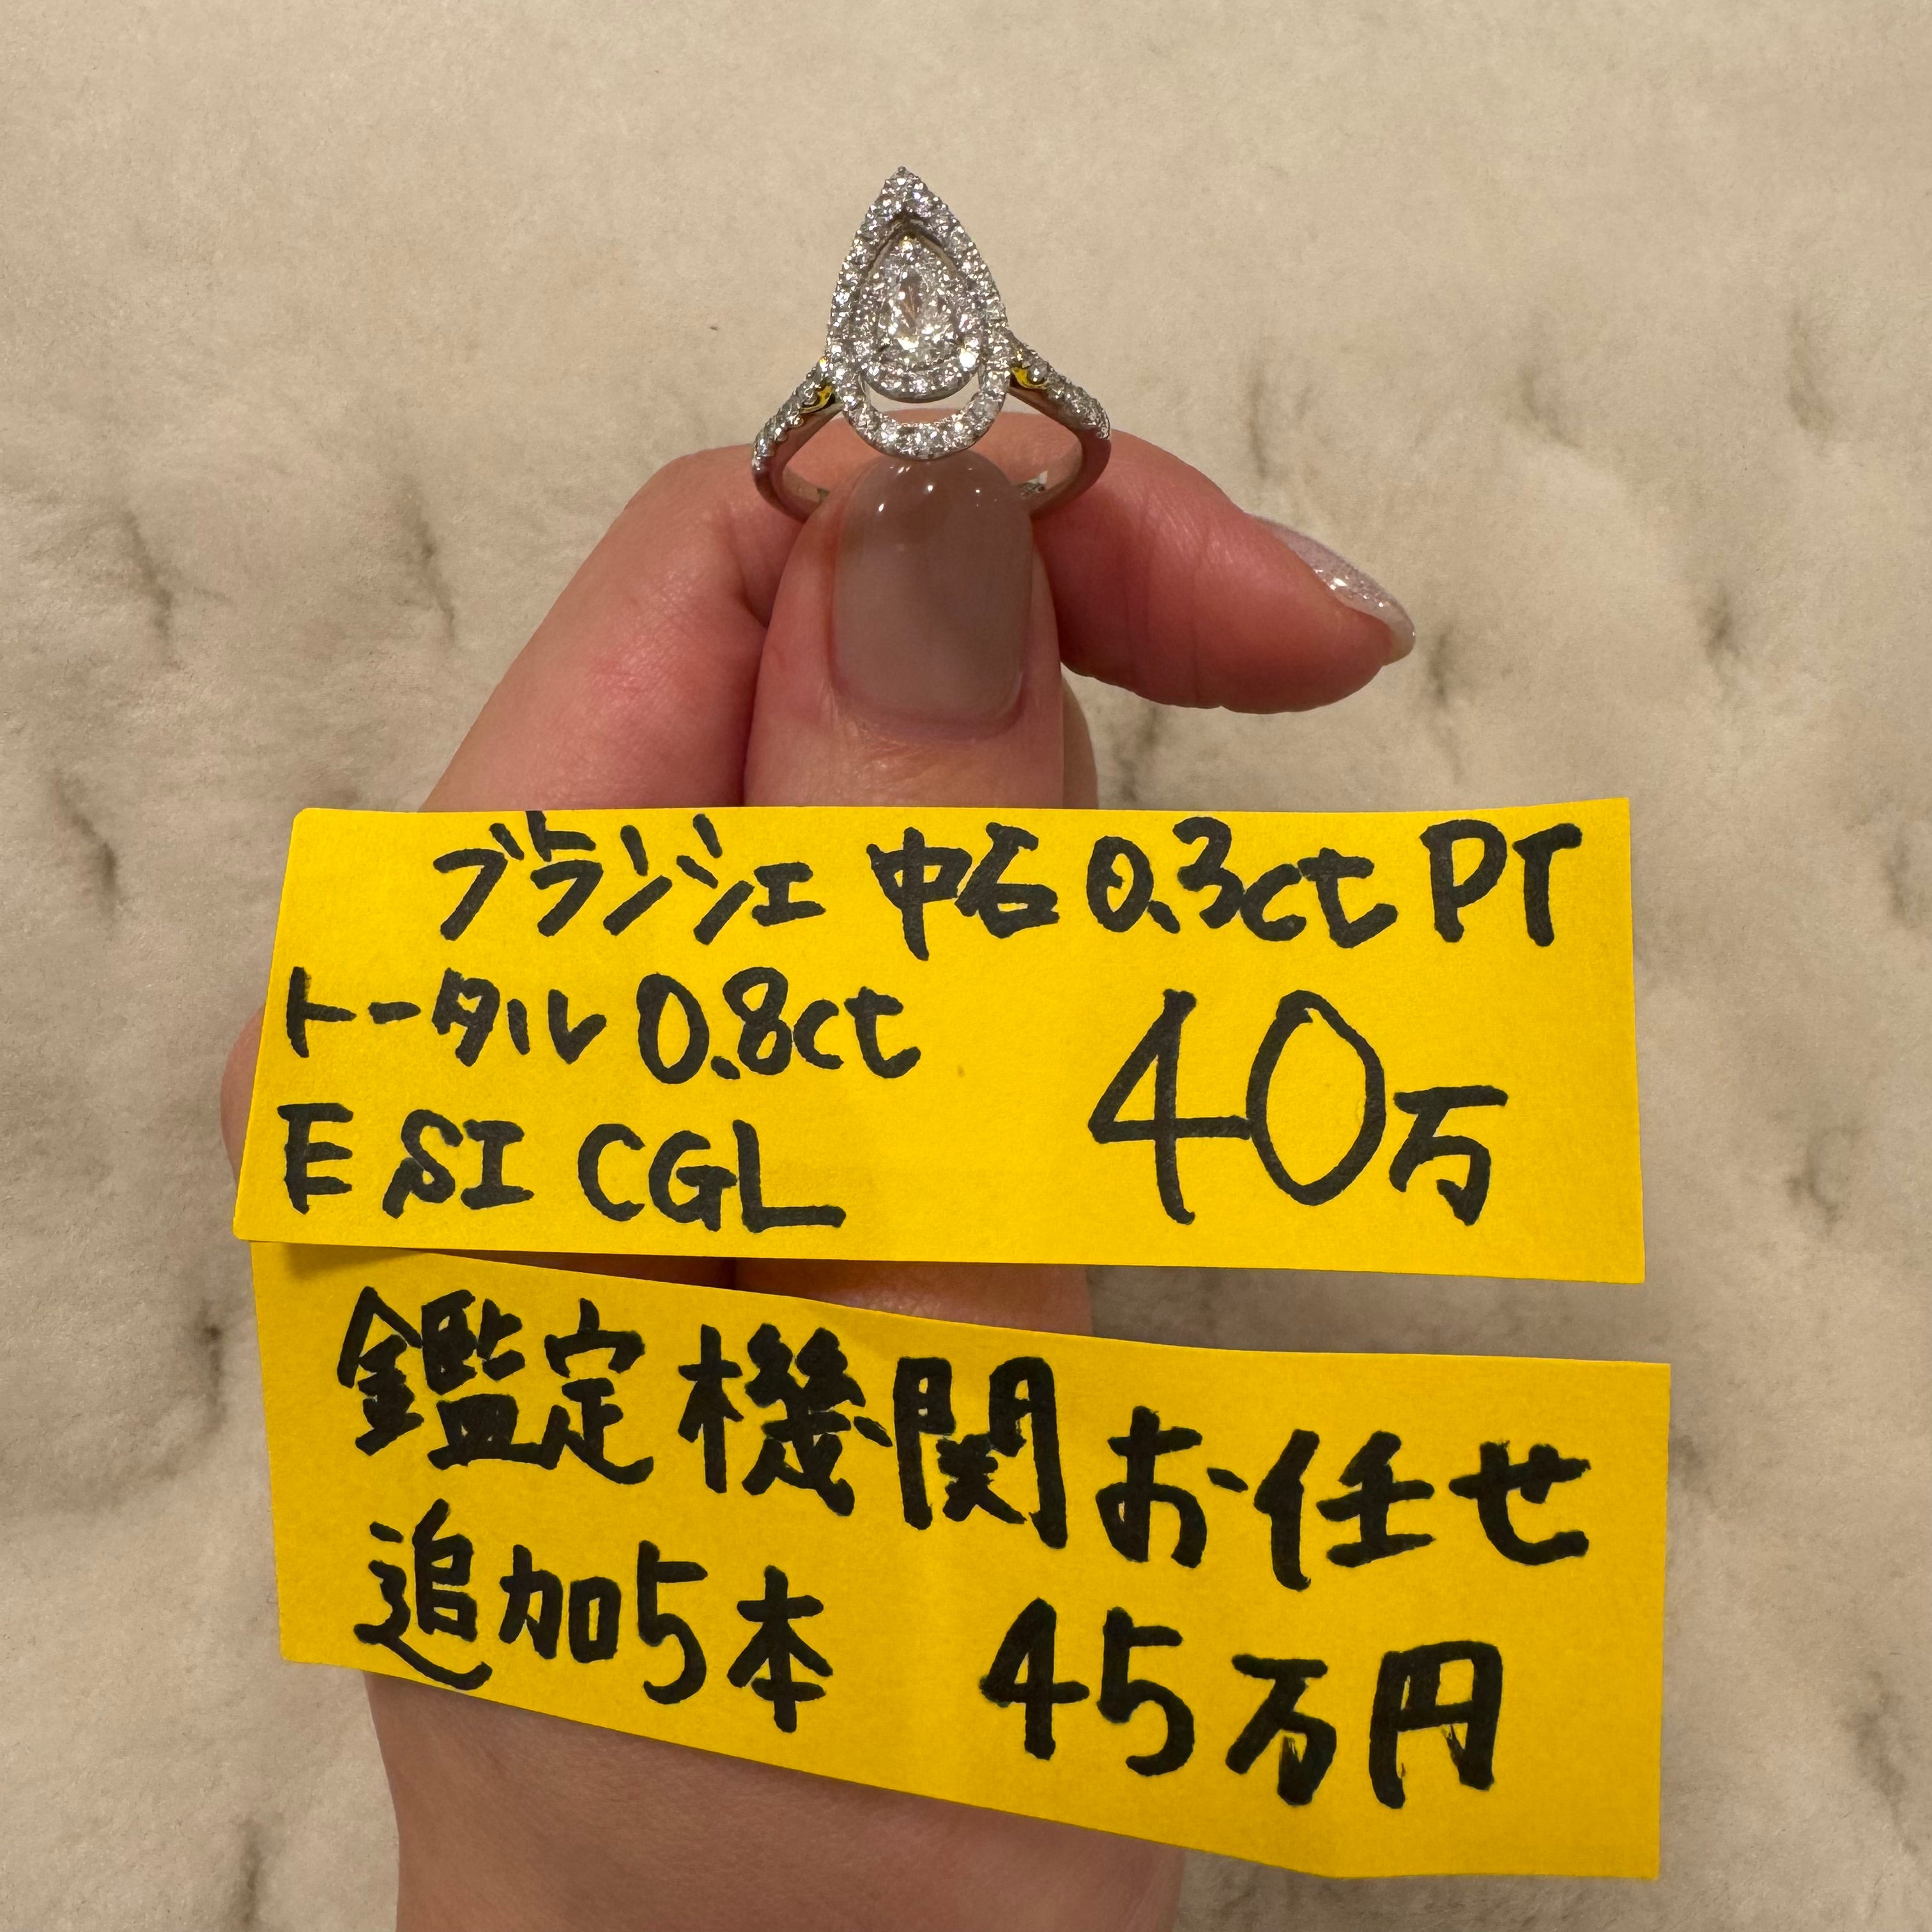 22-ブランシェ ダイヤ 中石0.3ct PS PT リング〜E SI